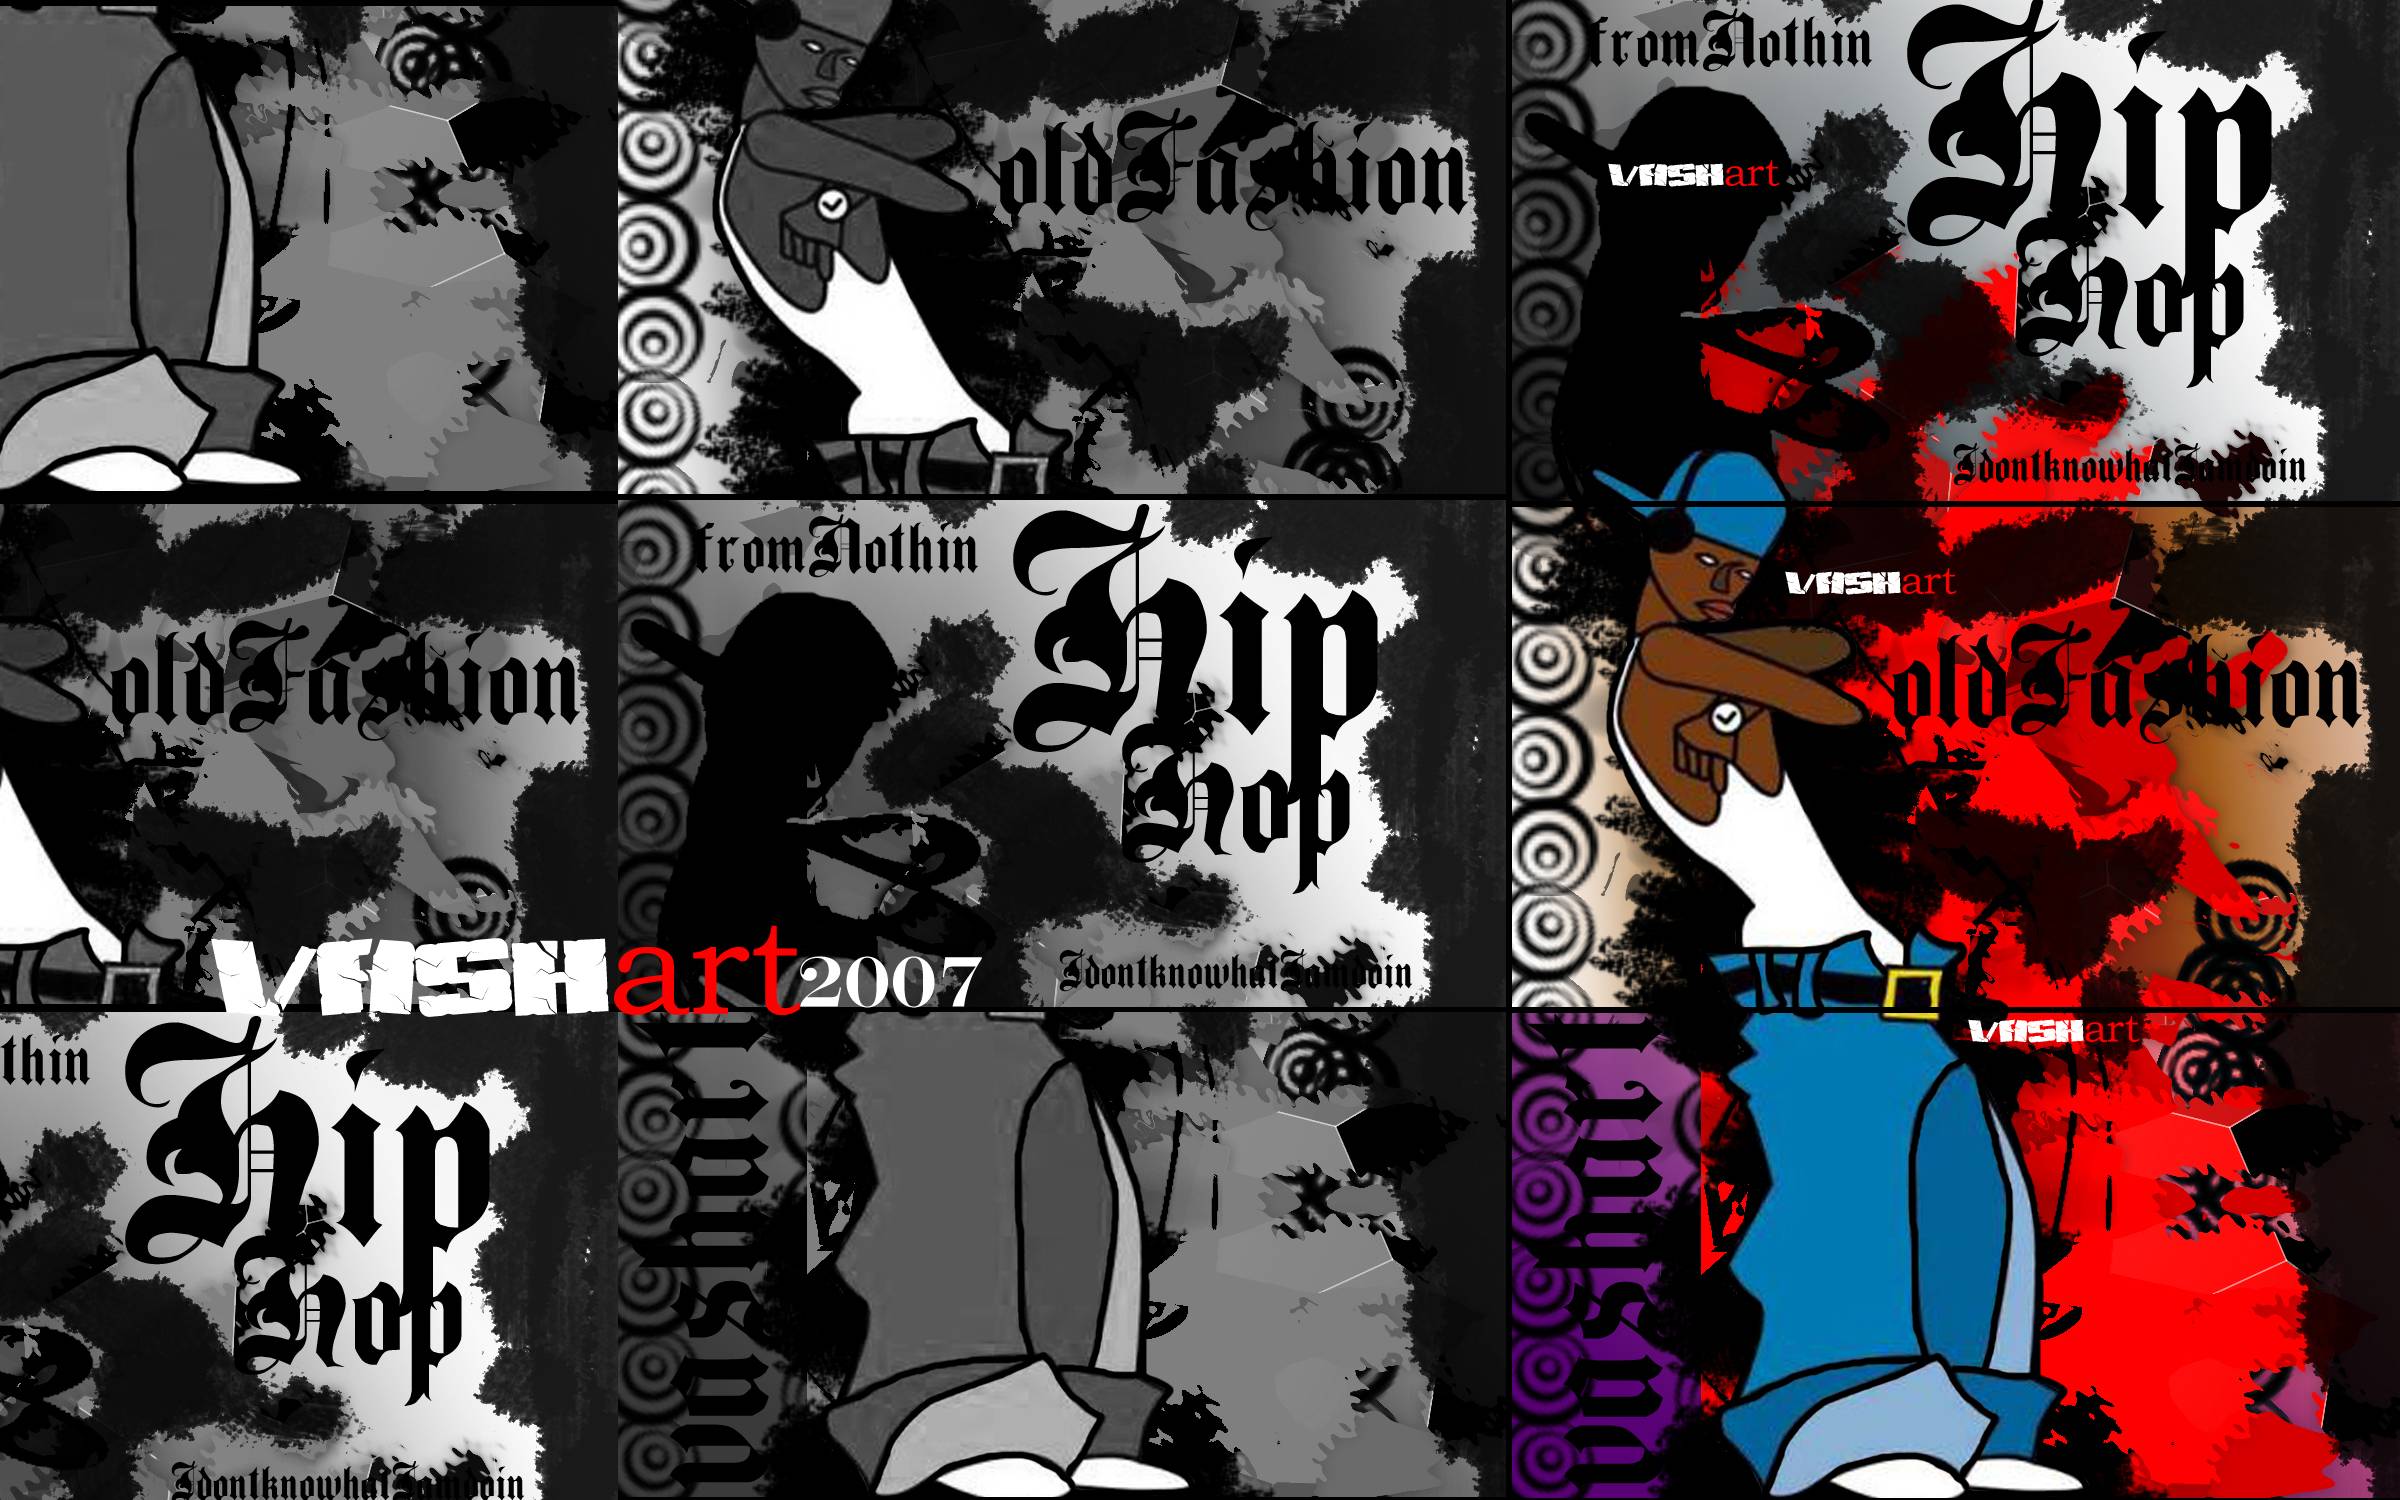 Fonds d&Hip Hop : tous les wallpapers Hip Hop